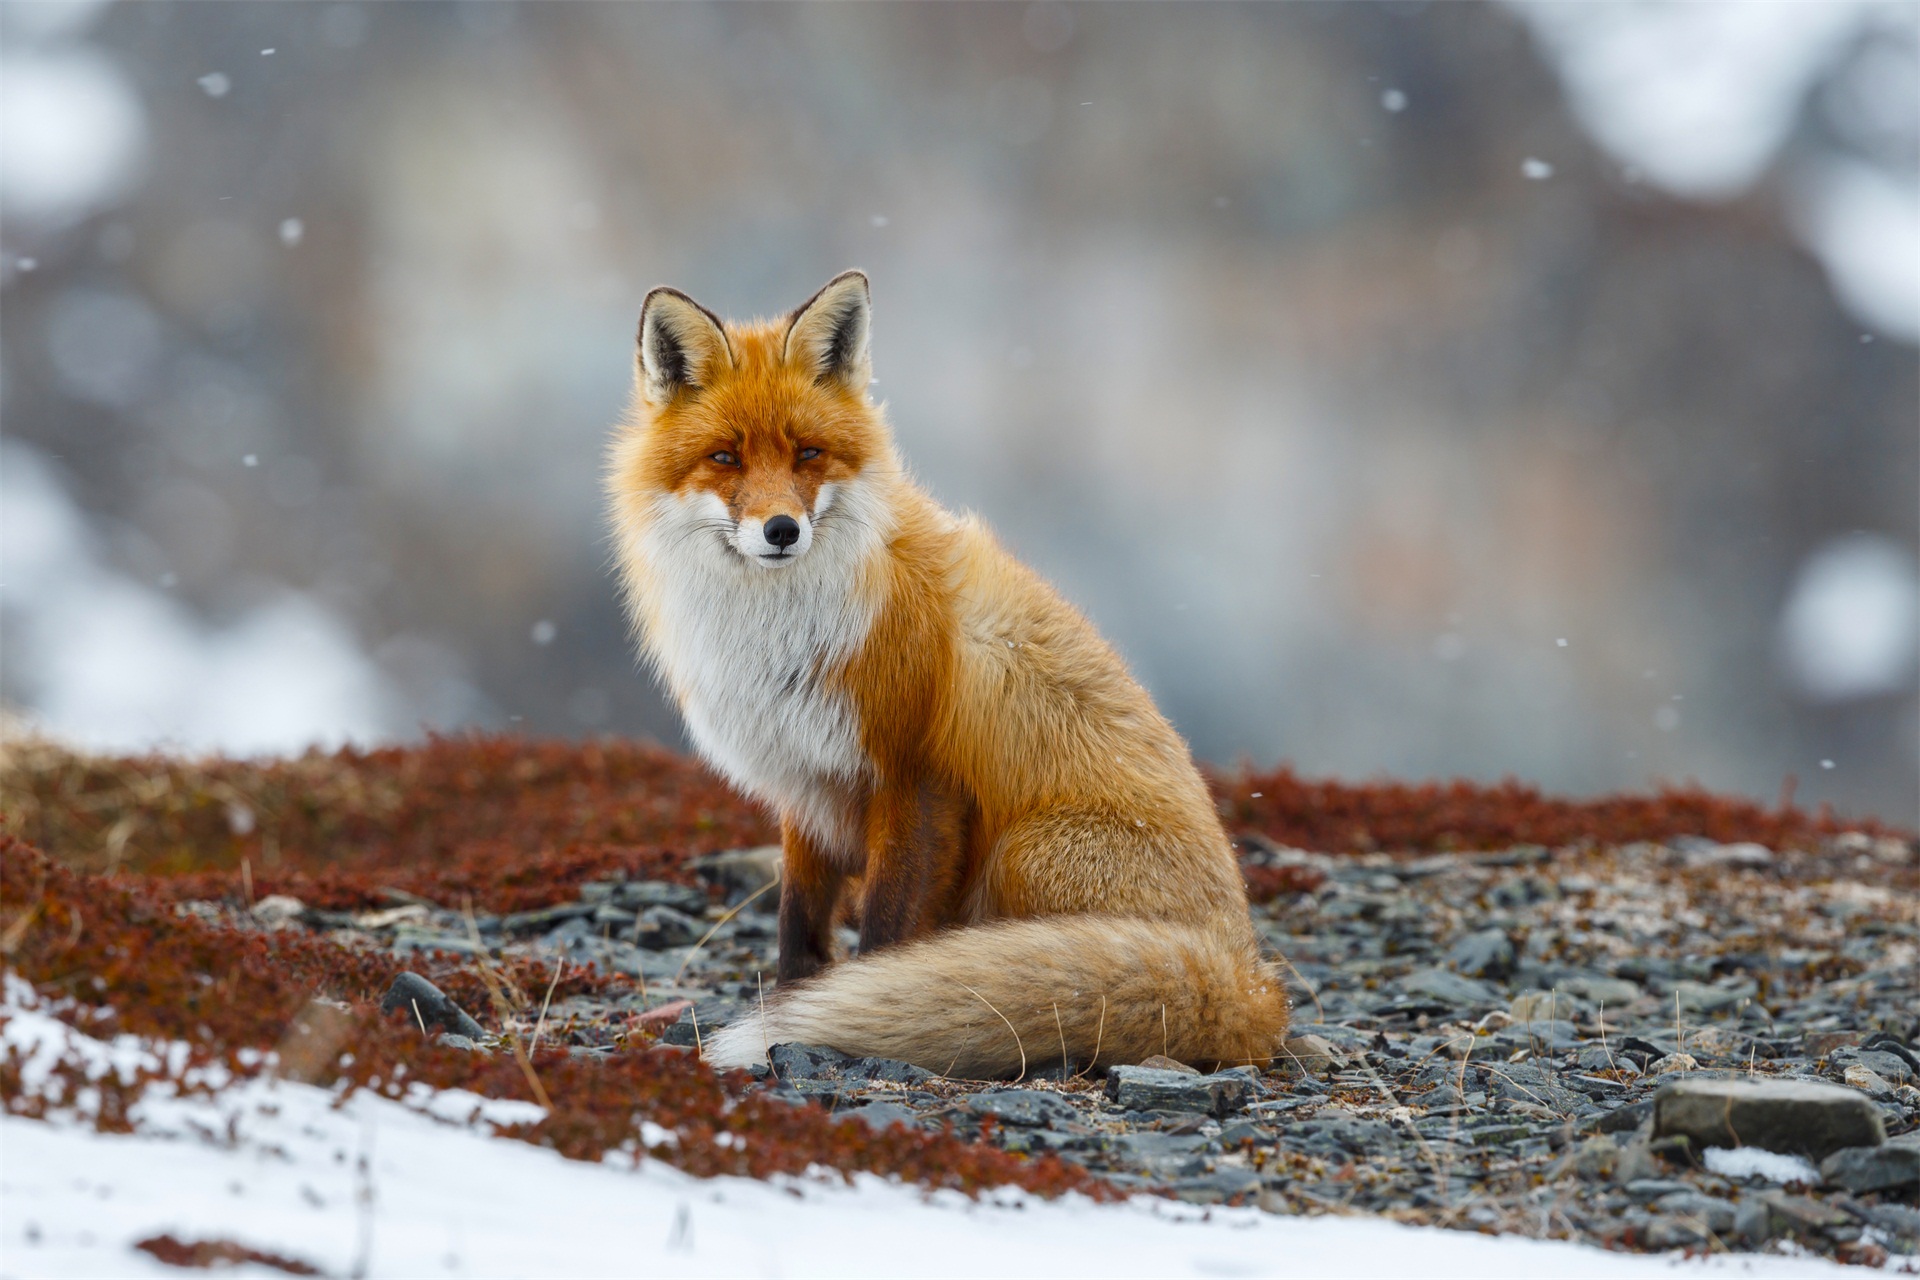 红褐色赤狐-147图片